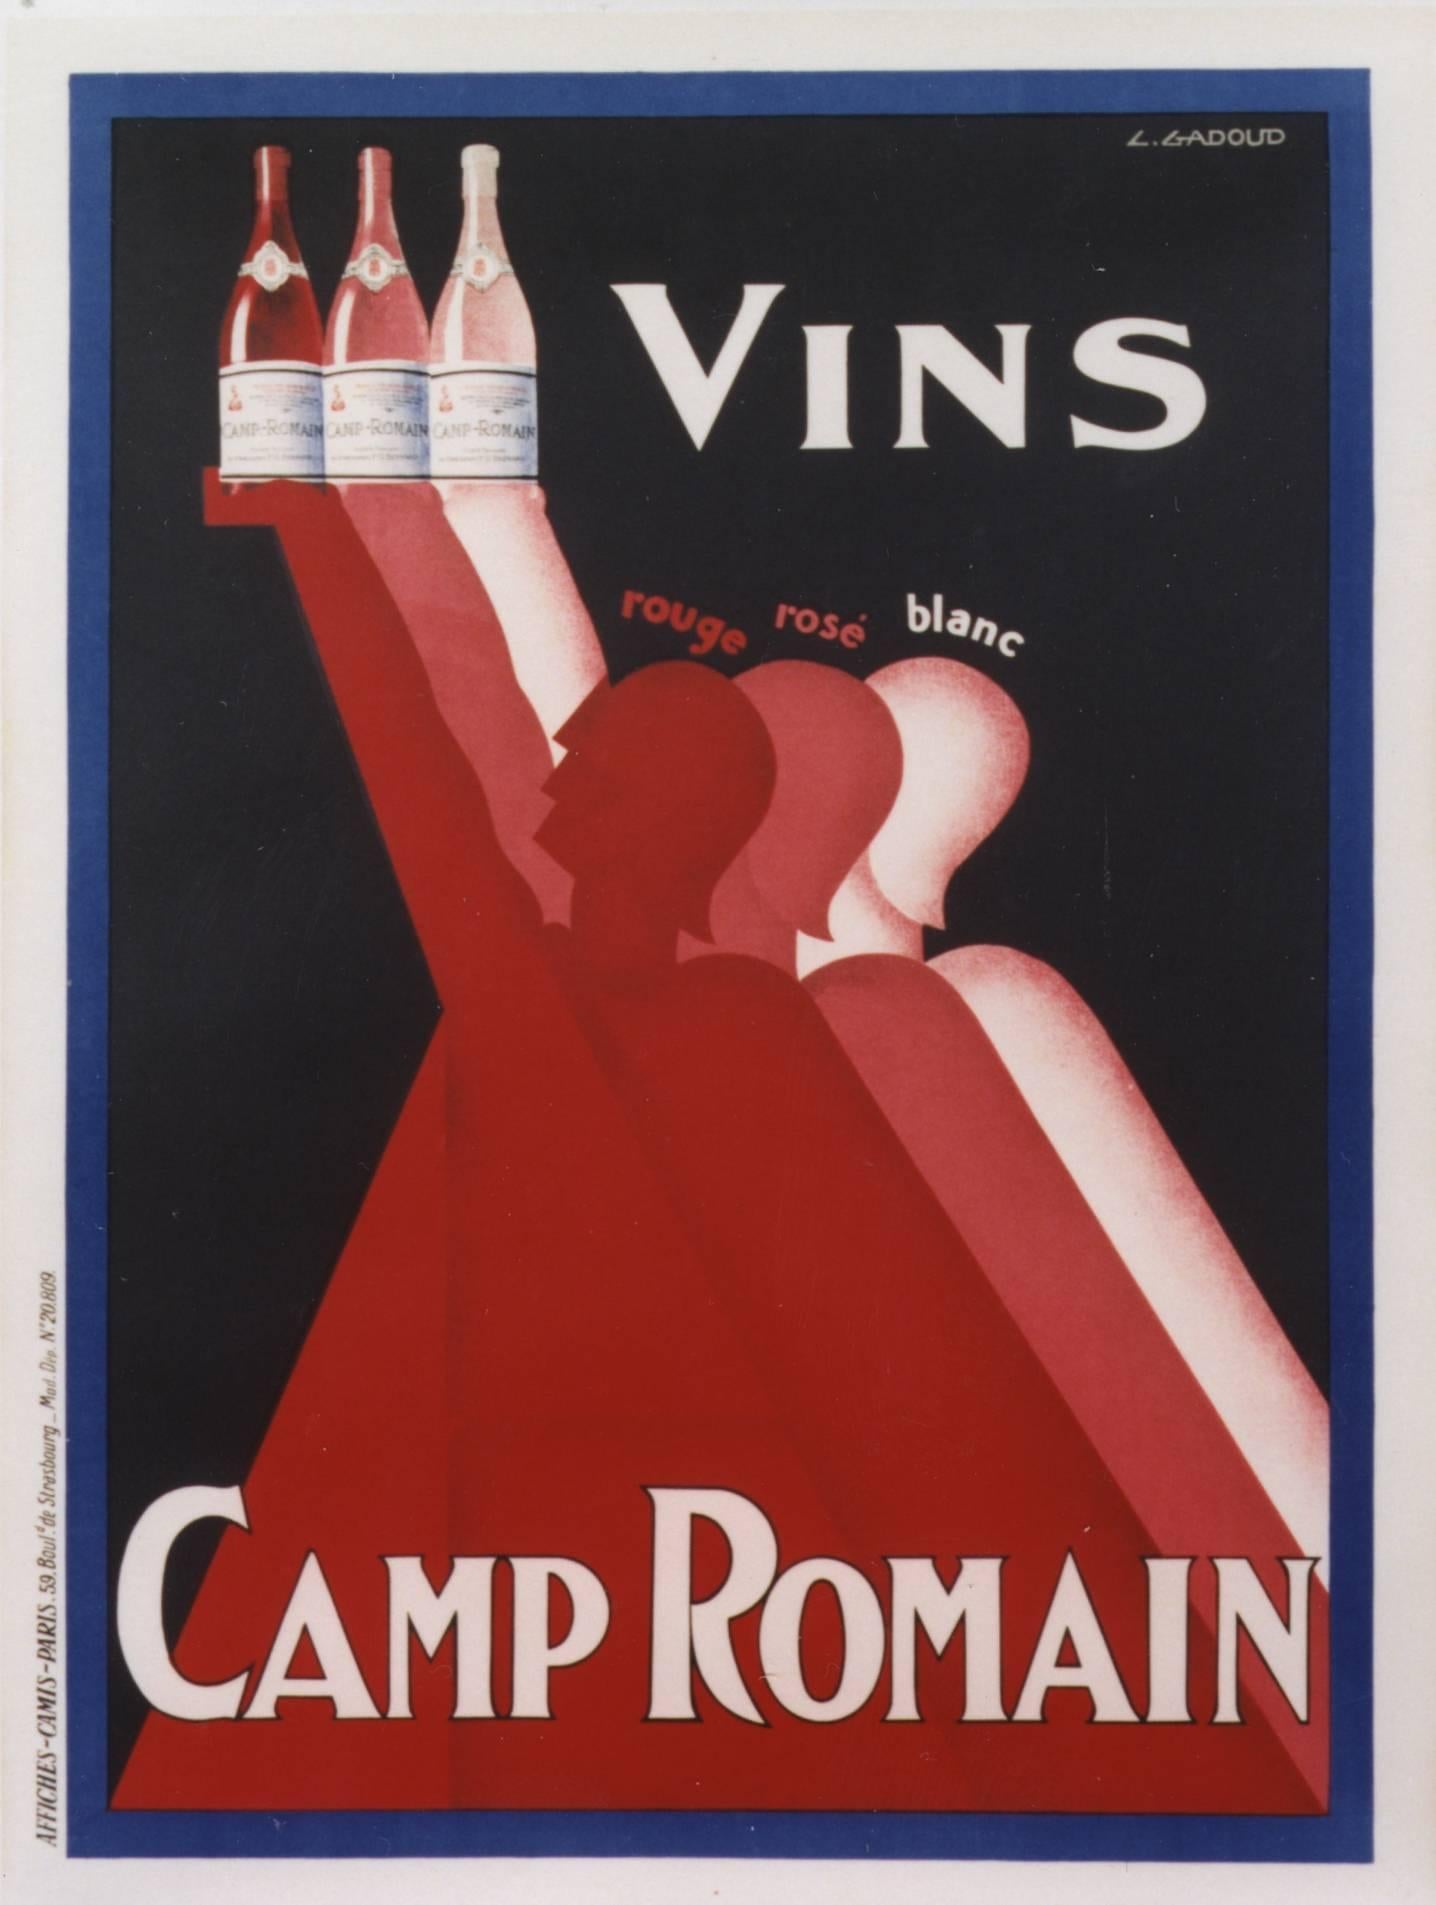 Camp Romain de Vins